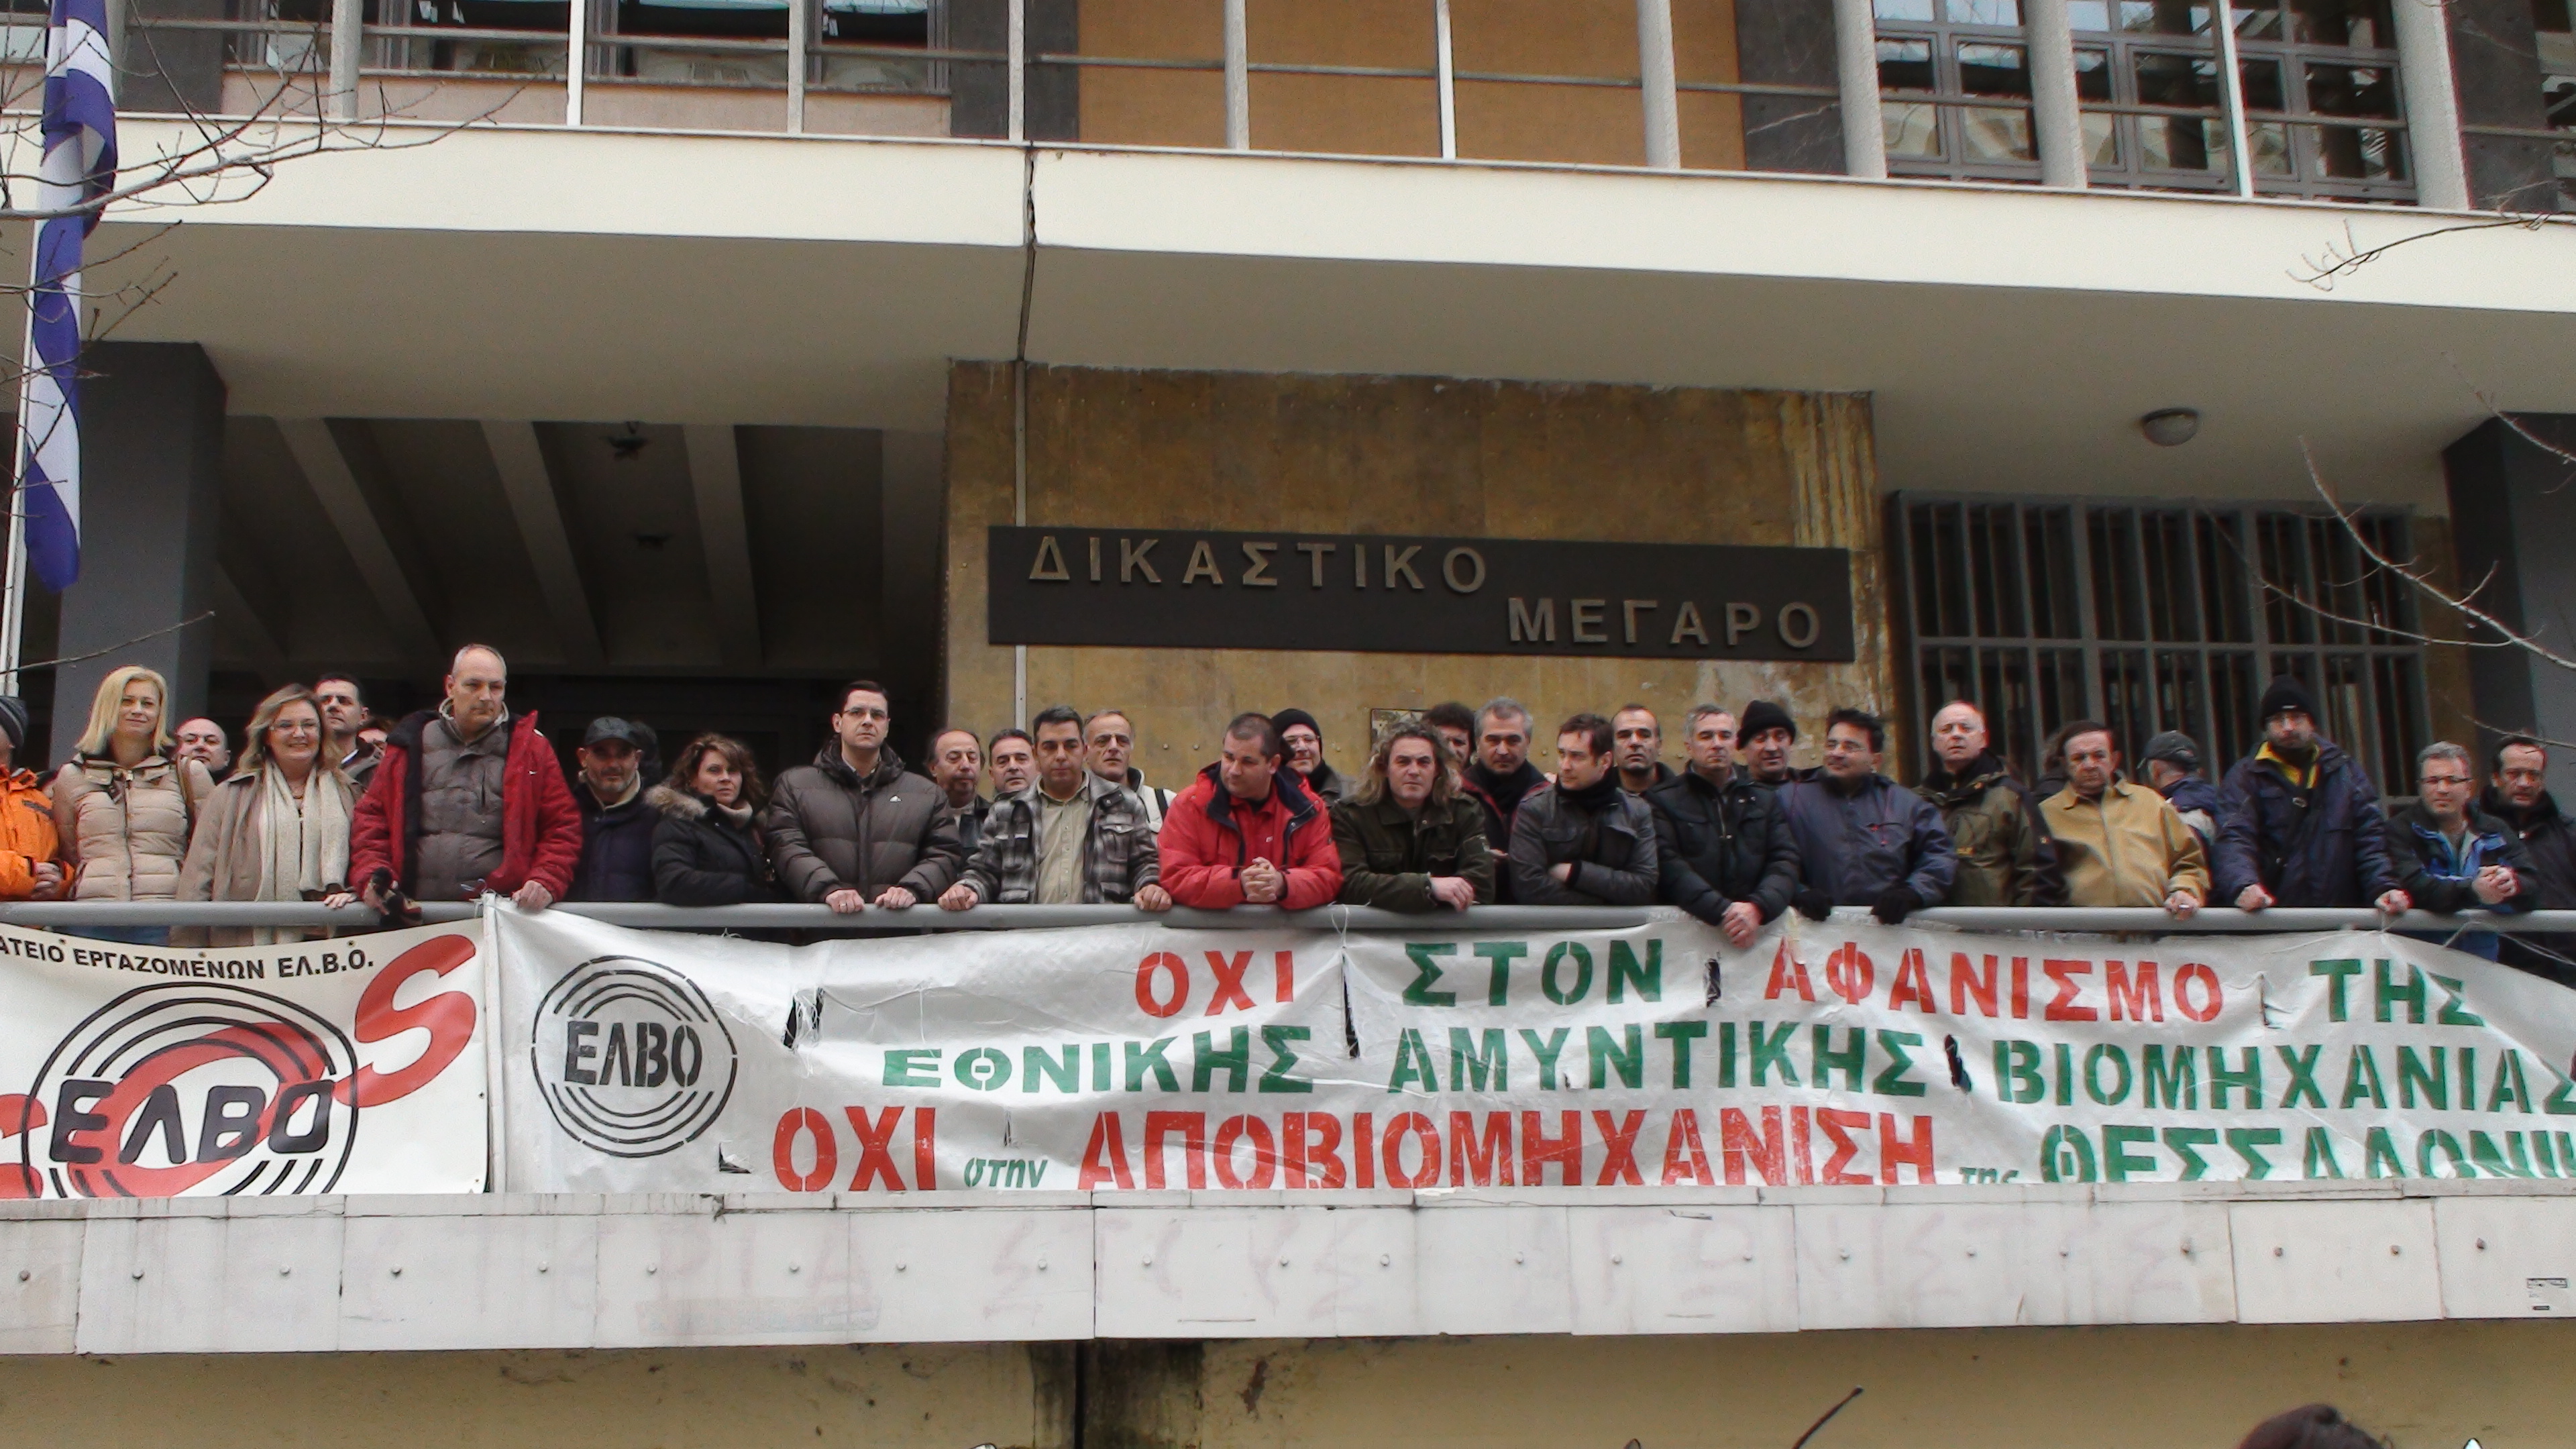 Εκδικάστηκε η αίτηση για την εκκαθάριση της ΕΛΒΟ- Συγκέντρωση διαμαρτυρίας στα δικαστήρια